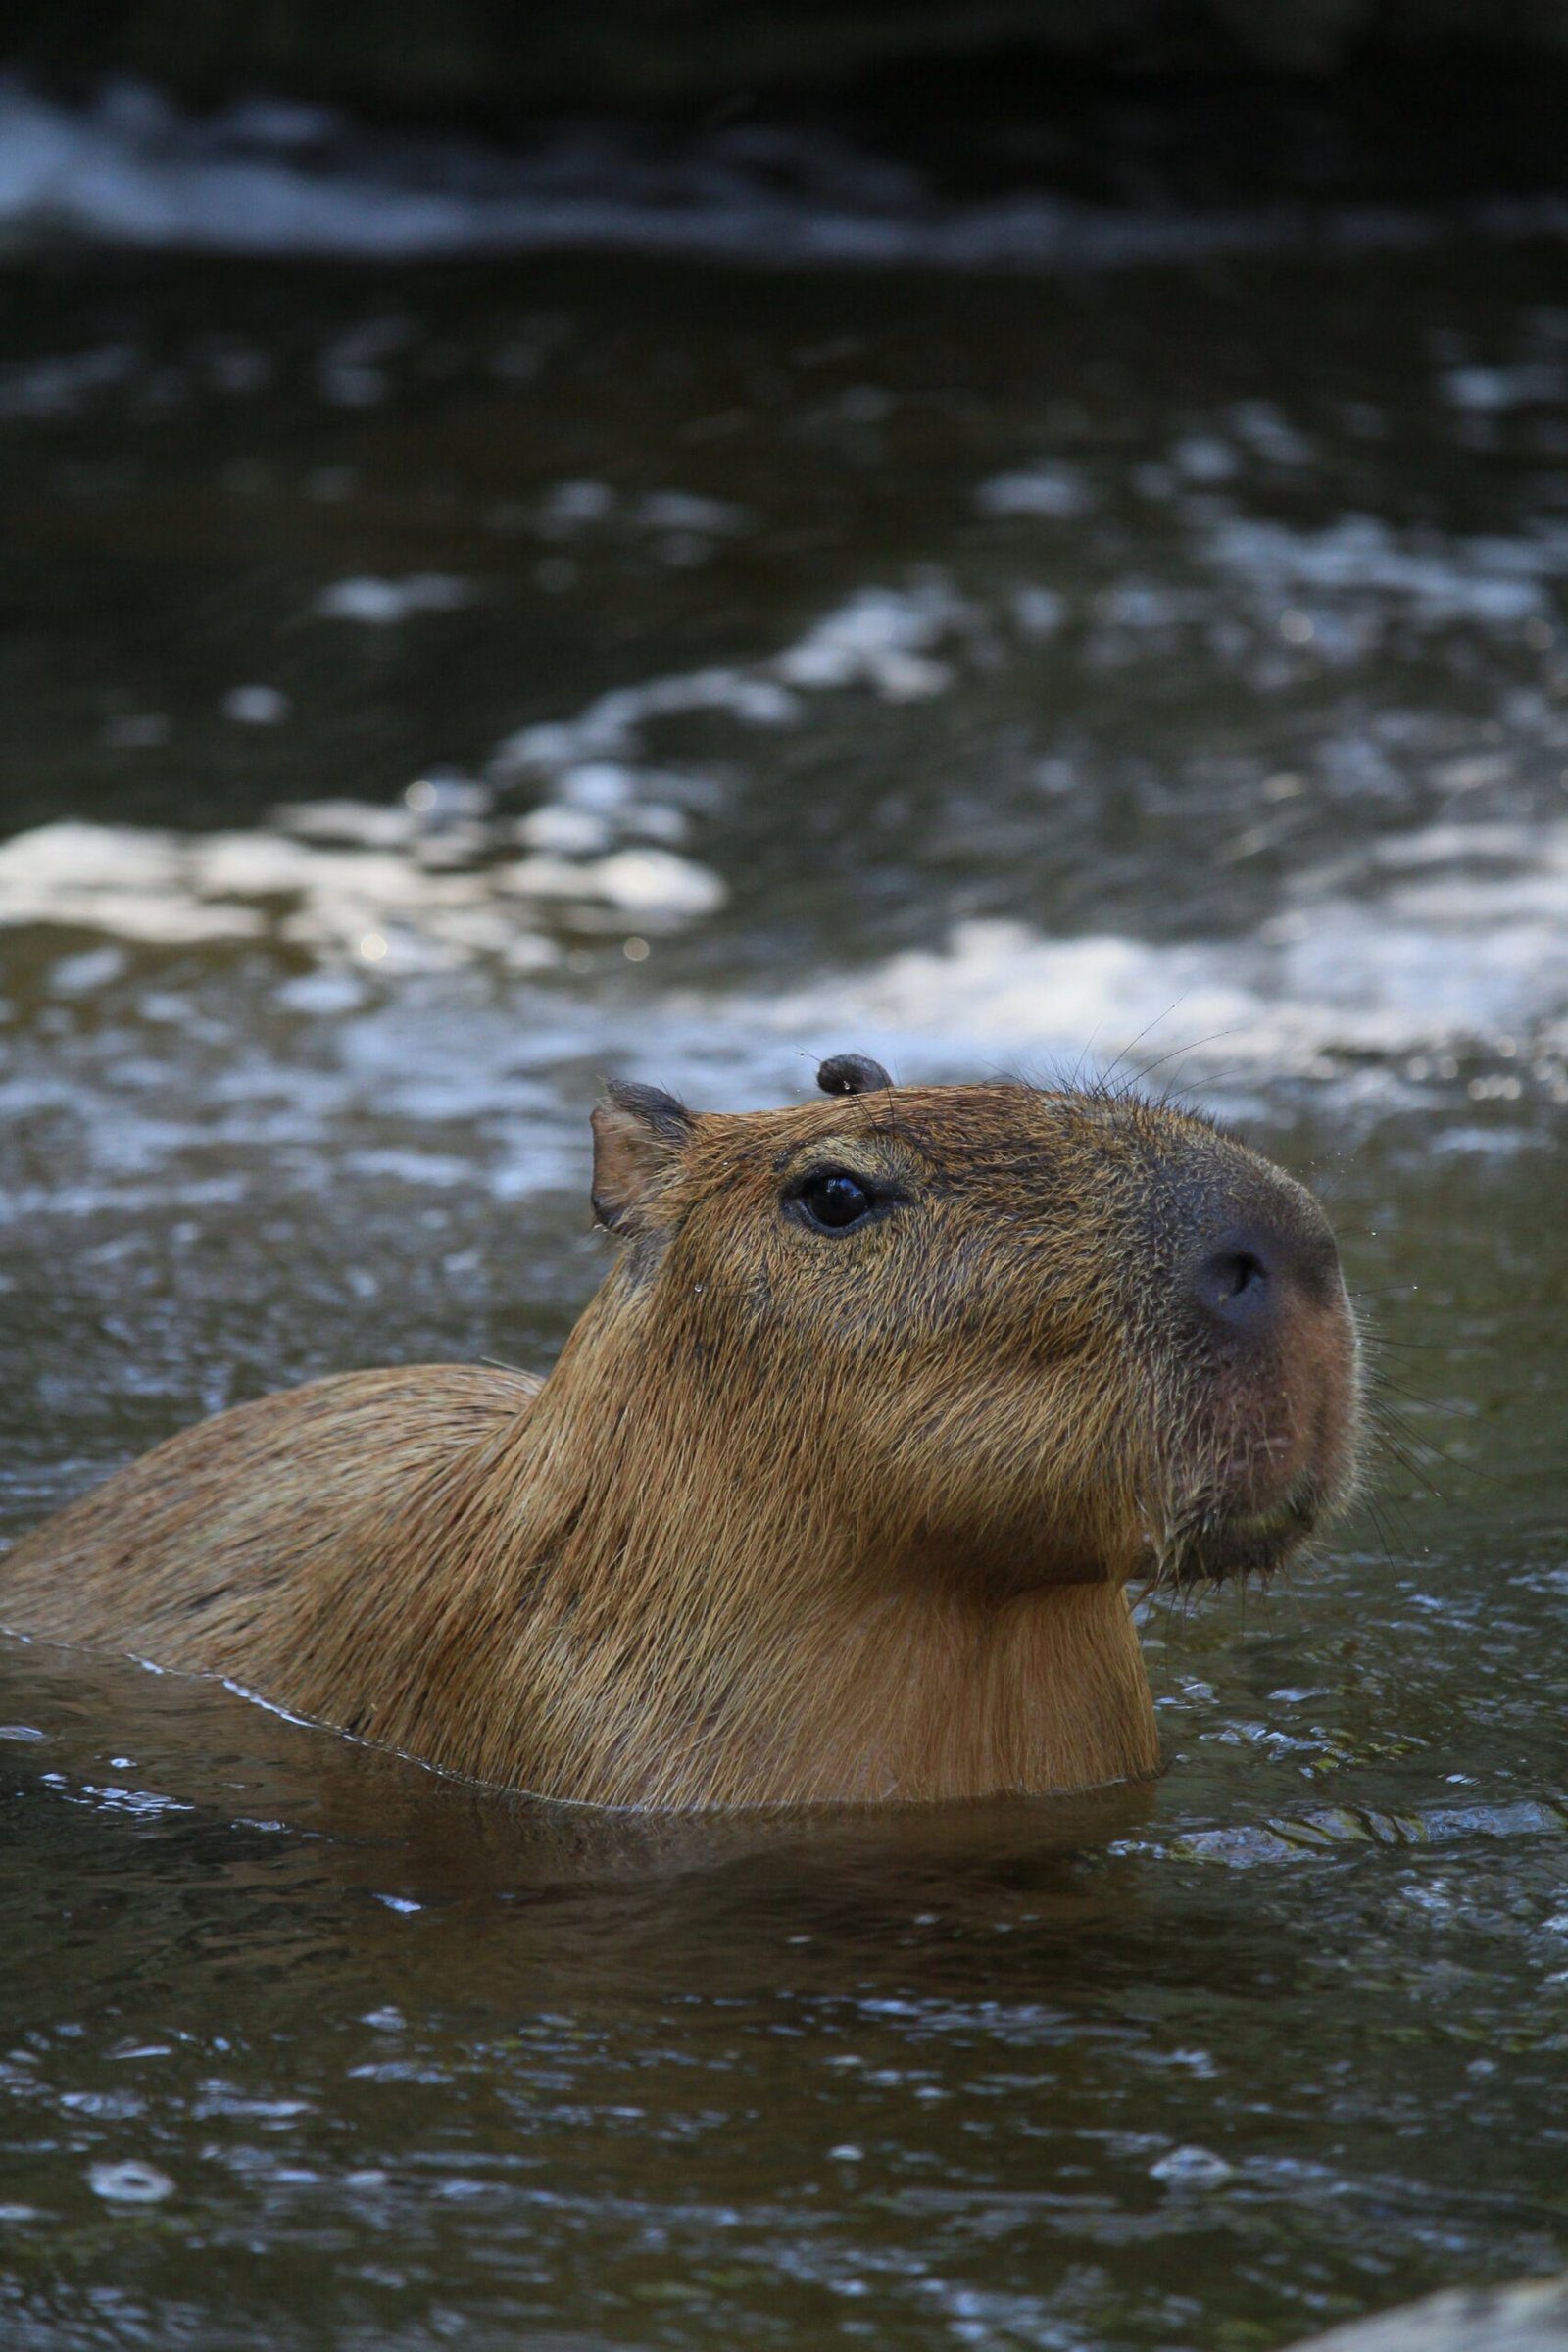 Exploring the Lincoln Park Zoos Fascinating Capybara Exhibit